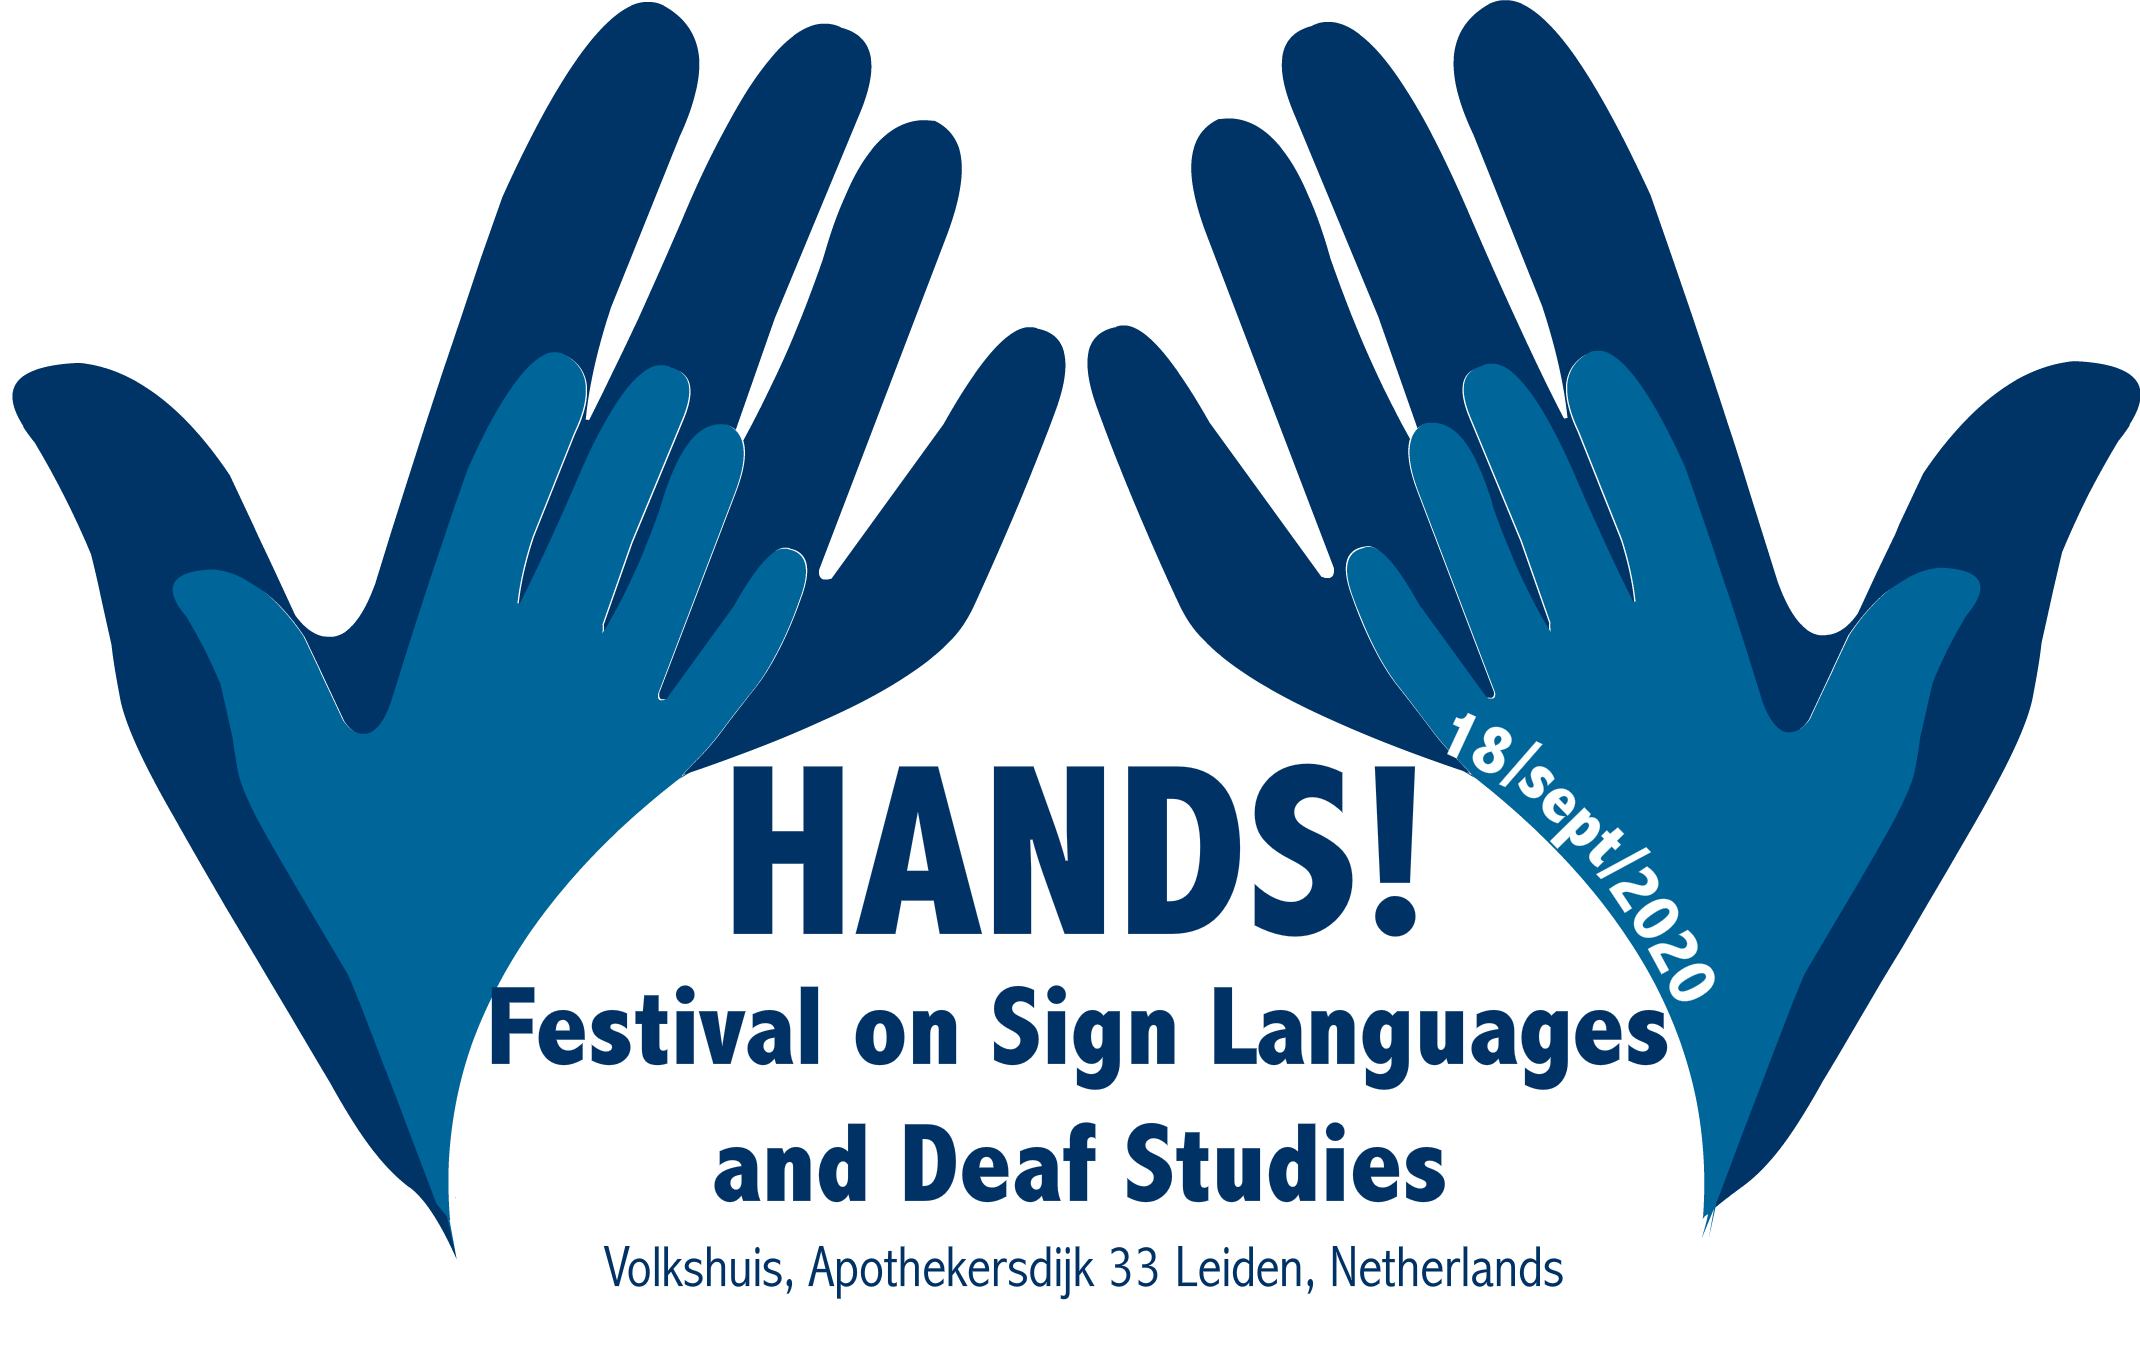 Poster of HANDS! 2020 Festival on Sign Languages and Deaf Studies. 18 Sep 2020. Volkhuis, Apothekersdijk 33 Leiden, Netherlands.